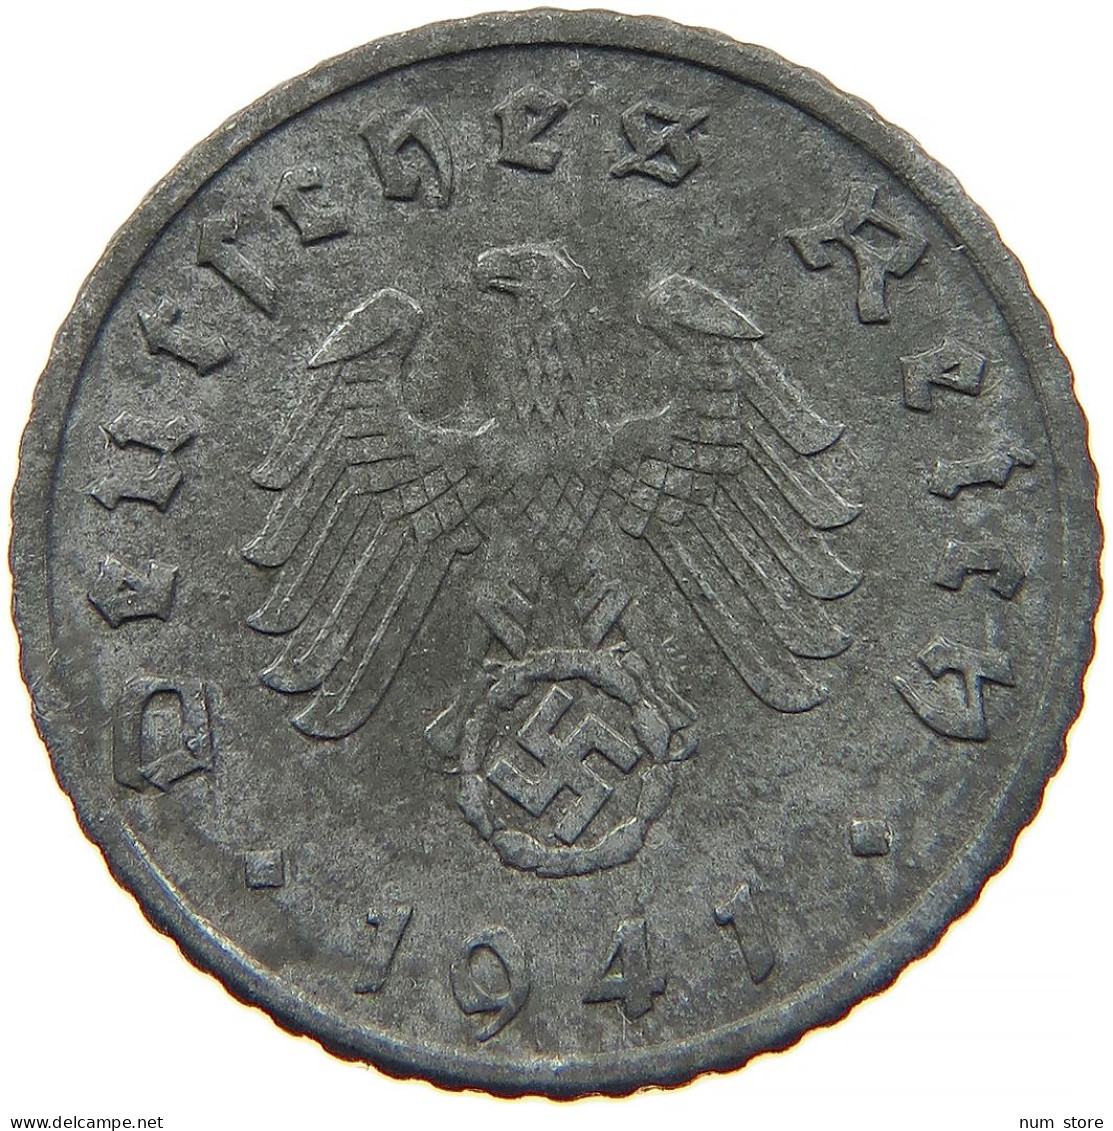 GERMANY 5 REICHSPFENNIG 1941 F #s091 0889 - 5 Reichspfennig